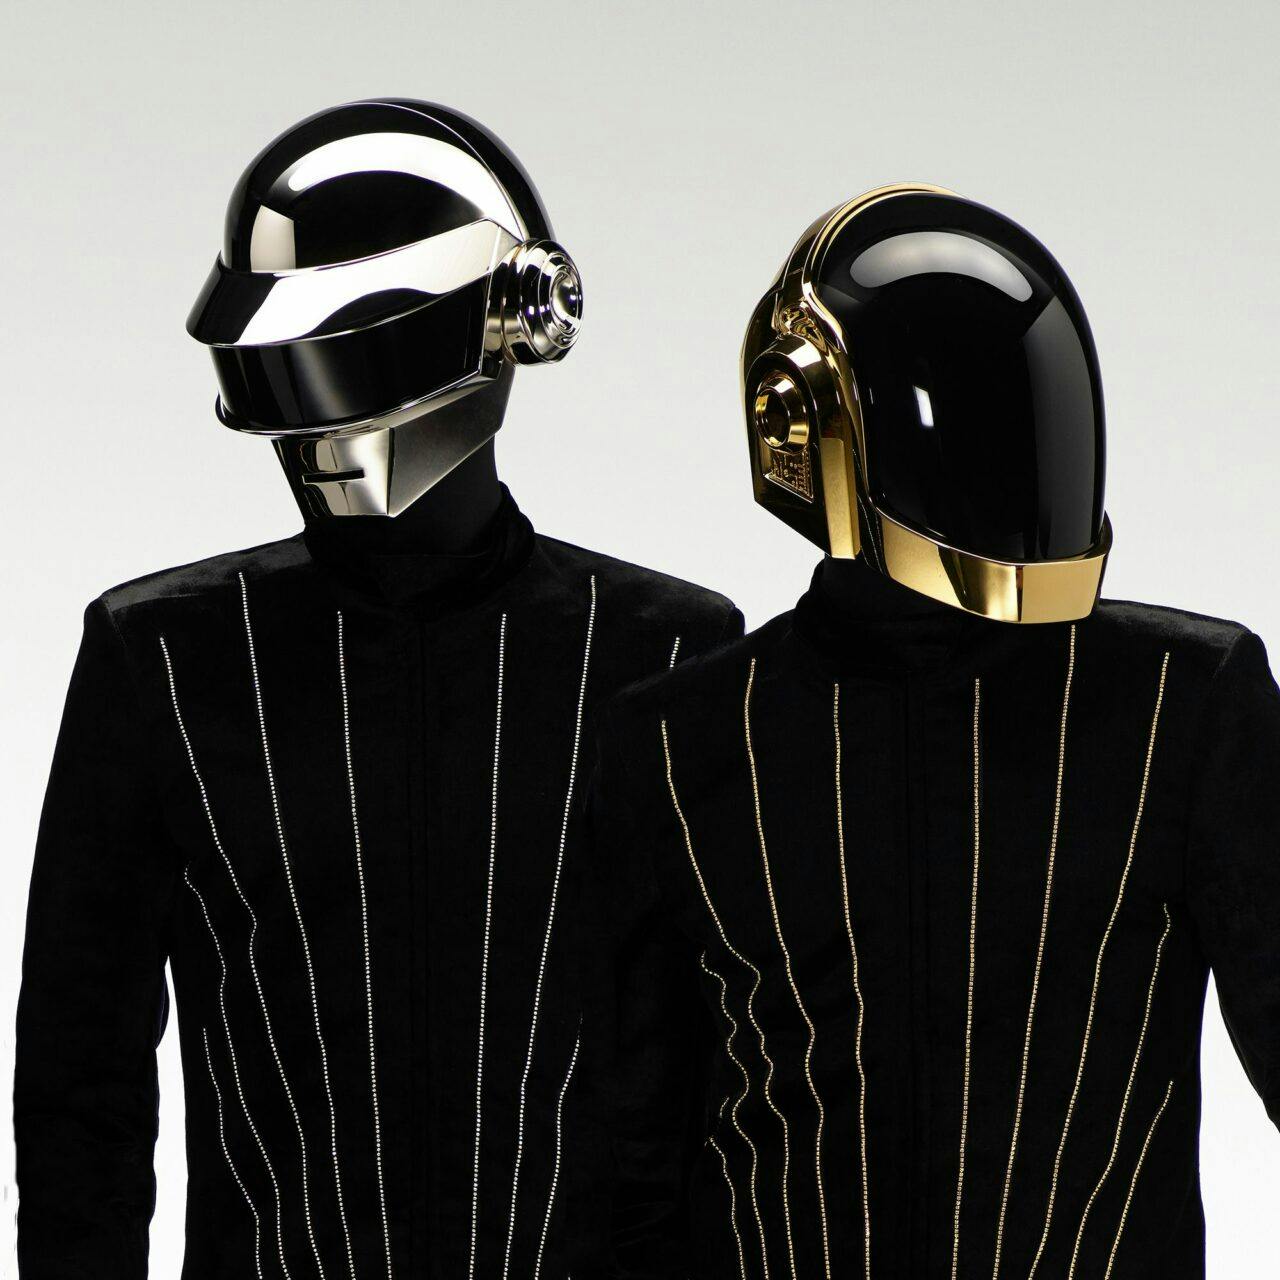 Neue Gerüchte um Daft Punk: Macht das Duo 2020 wieder Musik?